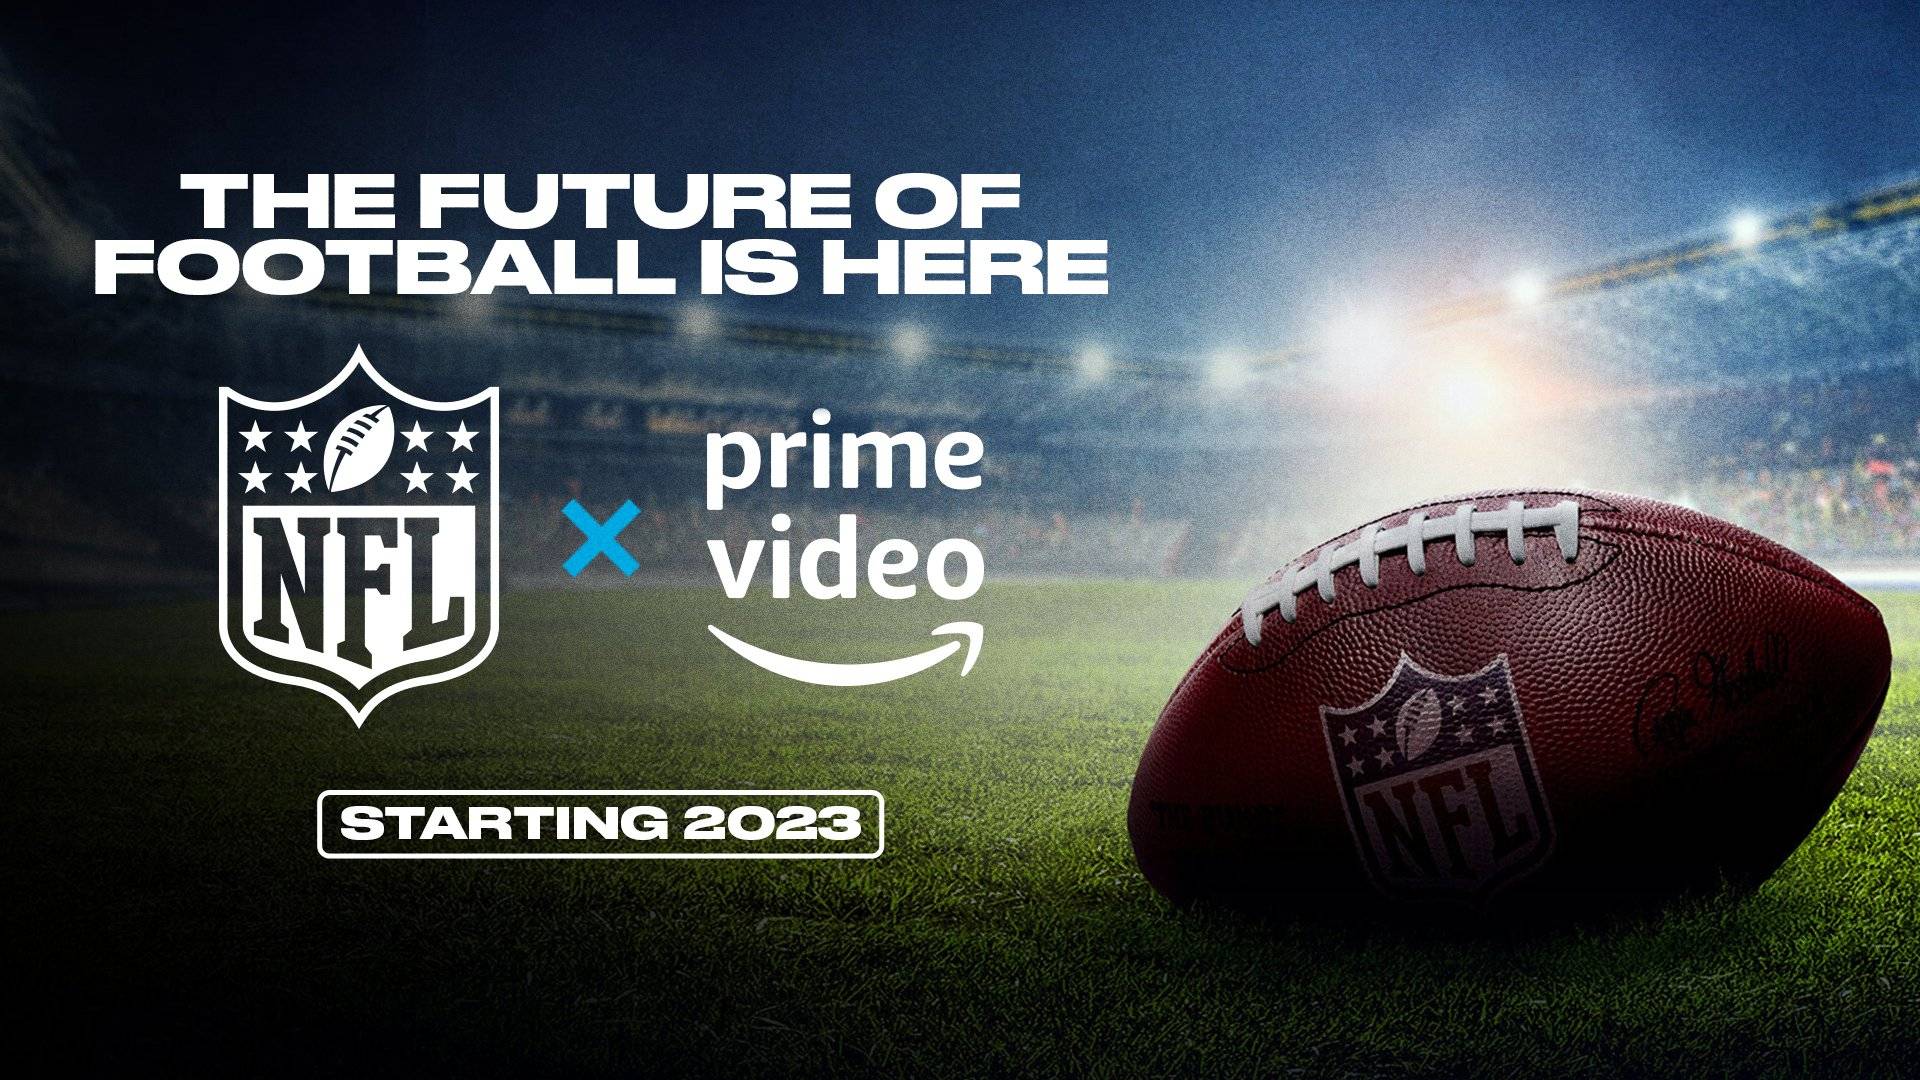 Amazon paga millones para adquirir los derechos exclusivos de Thursday Night Football de la NFL